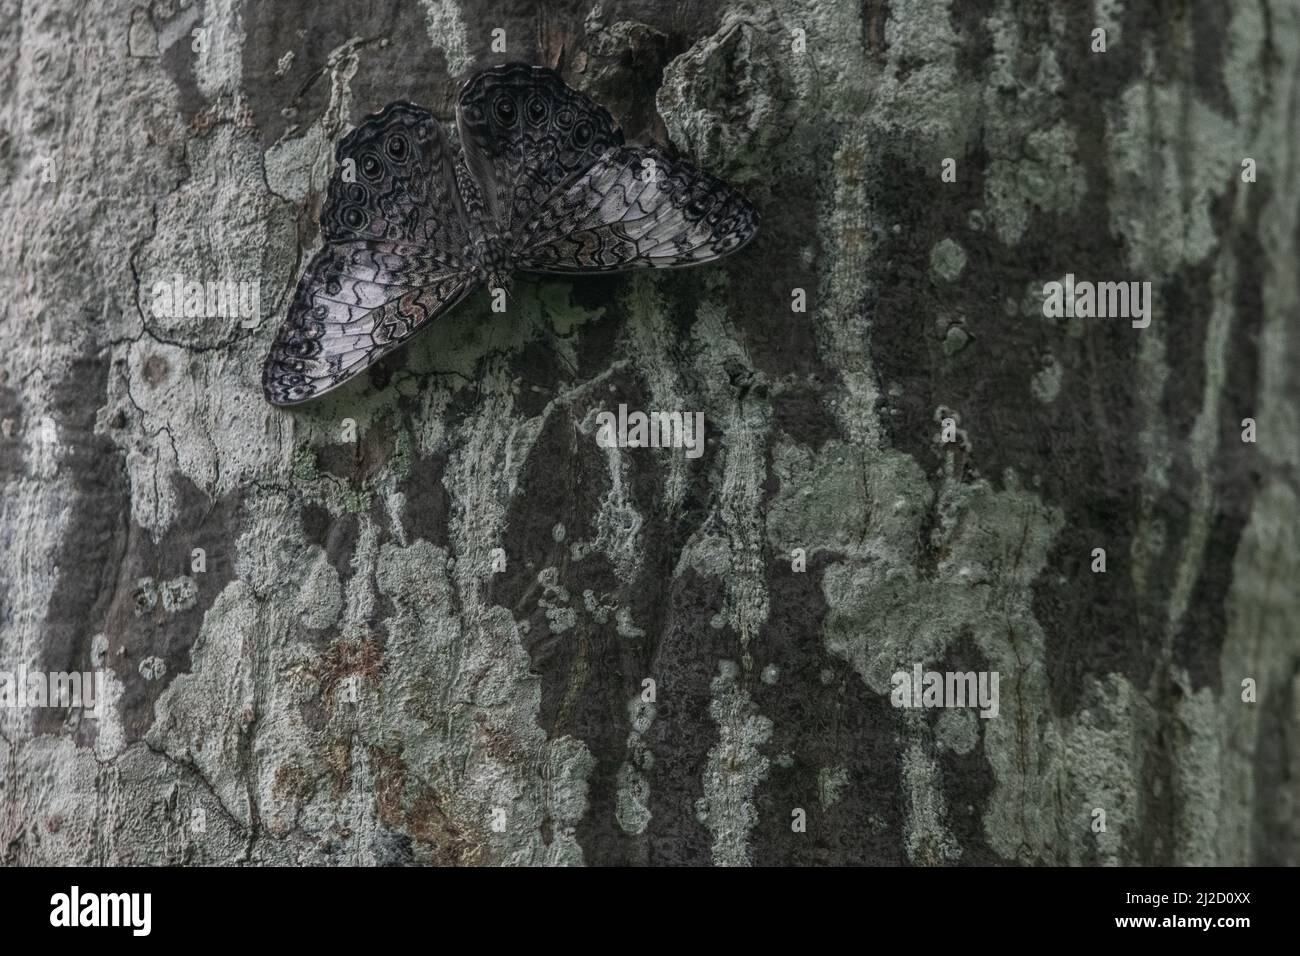 La farfalla cracker grigio (Hamadryas februa), la sua colorazione distruttiva aiuta a mantenerla mimetriata e nascosta su un tronco di albero nella foresta asciutta dell'Ecuador. Foto Stock